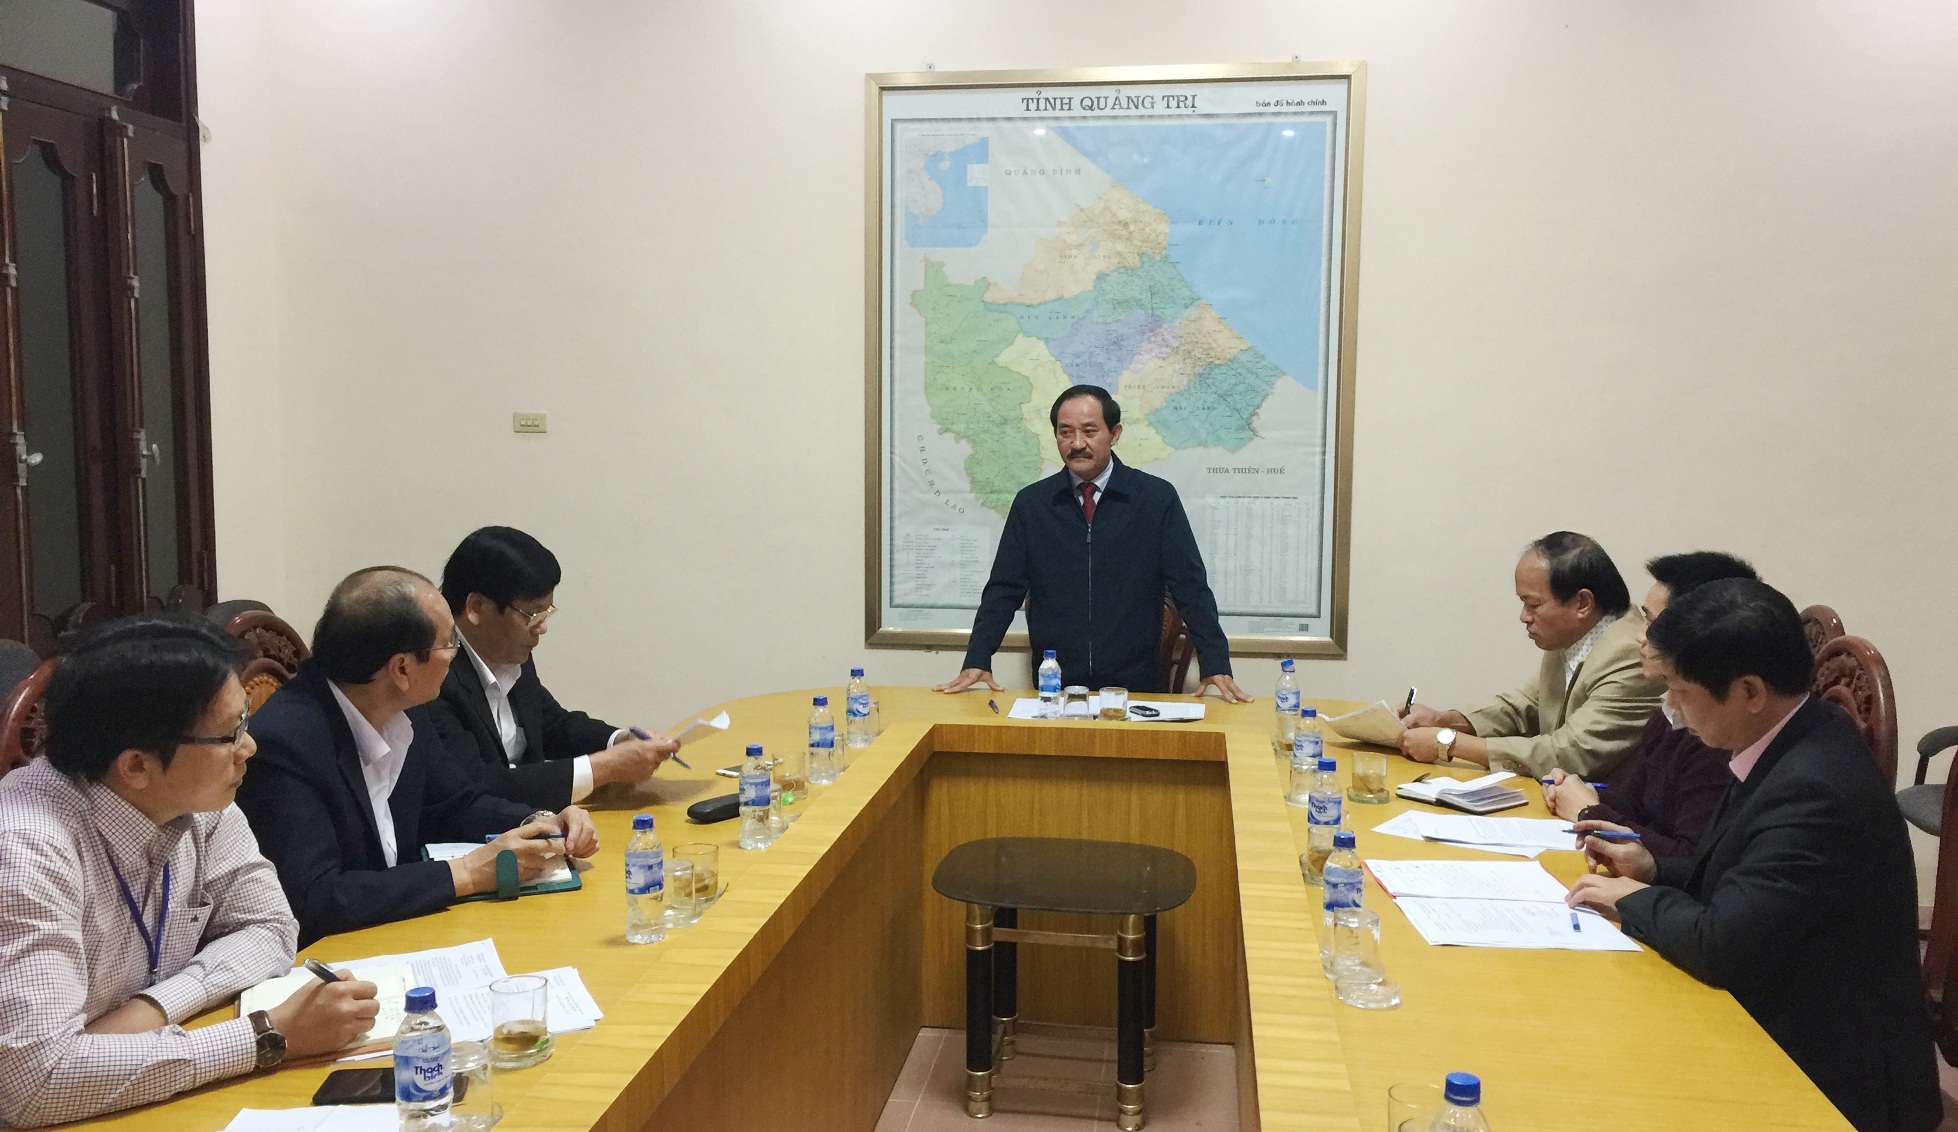 Ông Nguyễn Quân Chính, Phó Chủ tịch UBND tỉnh Quảng Trị phát biểu tại buổi làm việc